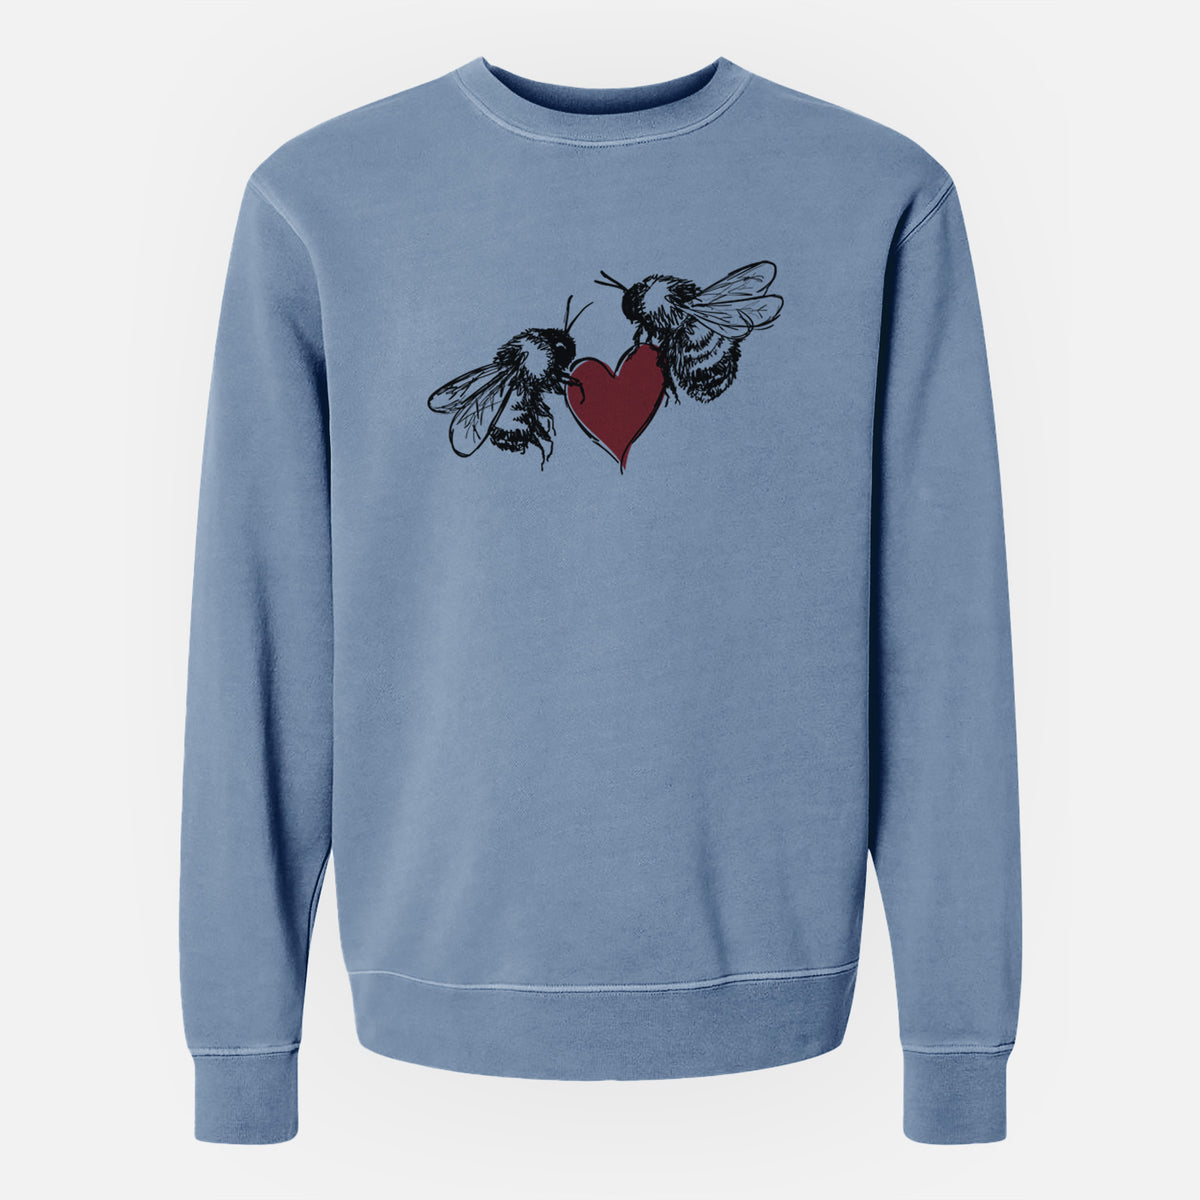 Love Bees - Unisex Pigment Dyed Crew Sweatshirt